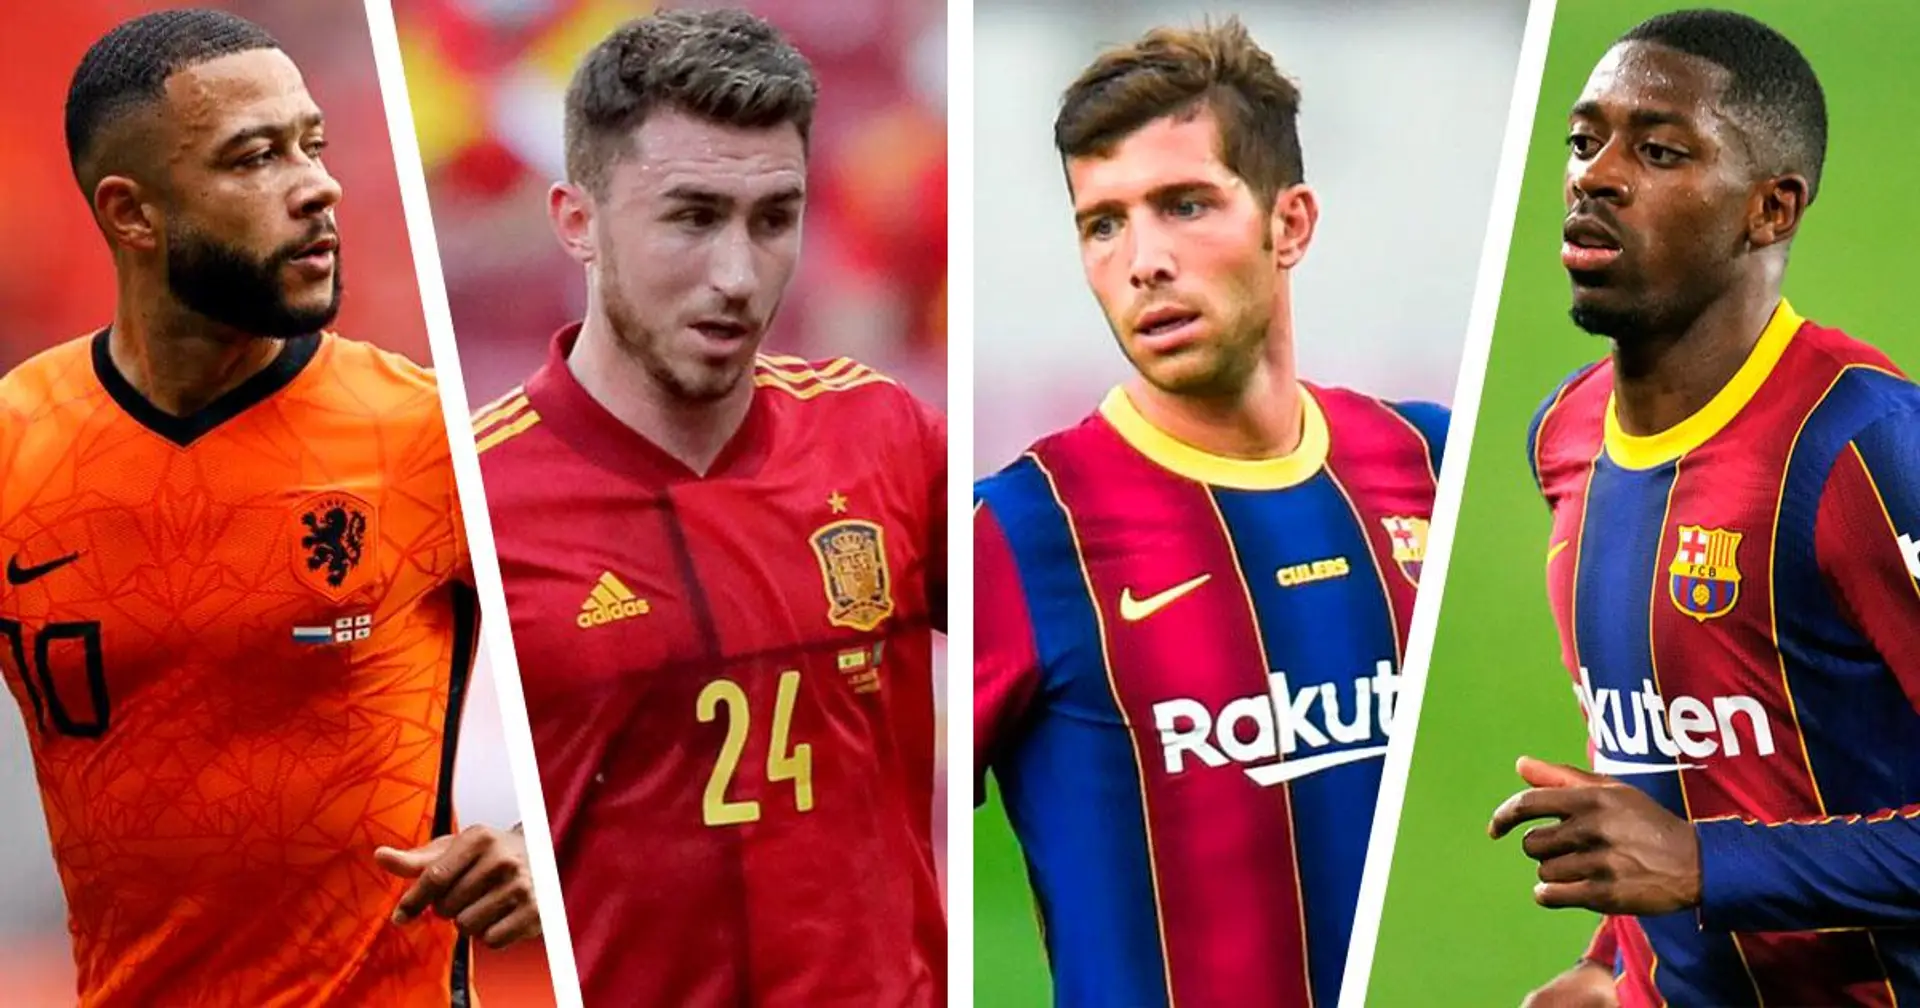 8 arrivées, 4 départs: 12 noms cités dans le dernier tour d'horizon des transferts du Barça avec cotes de probabilité